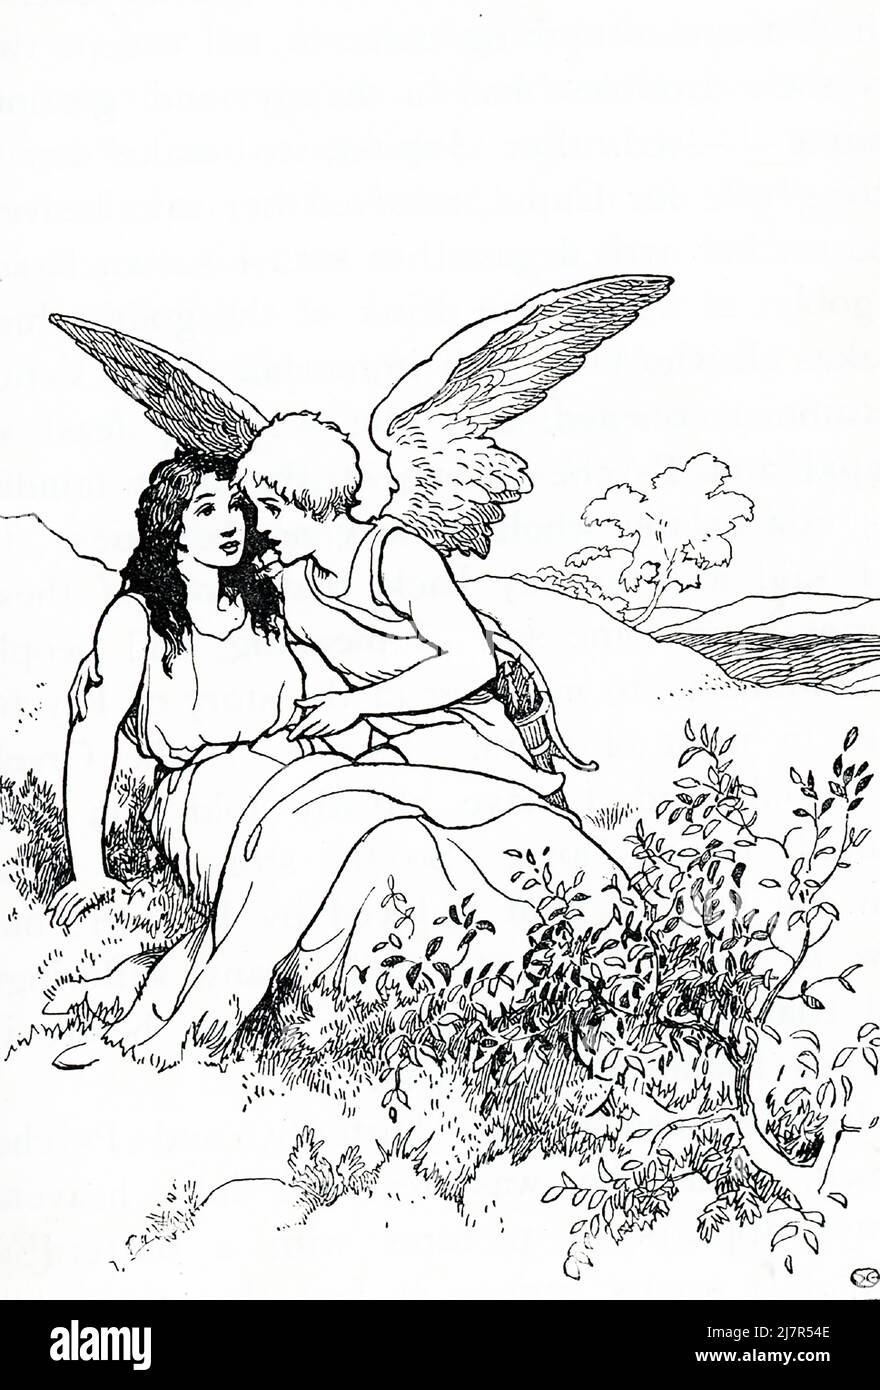 Secondo la mitologia greca e romana, Cupido (Eros ai Greci) era il dio dell'amore. Sua madre, Venere (Afrodite), era gelosa di Psiche, una principessa mortale, e mandò Cupido a spararla con una freccia d'amore che le avrebbe fatto innamorarsi di una creatura orribile. Per caso, Cupid si è preso a pricciarsi così e ha invertito l'effetto su Psiche. Venere tentò senza successo di tenere separati i due. Infine, Cupido e Pysche (visti qui insieme) furono lasciati sposare, e a Psiche fu concessa immortalità. Foto Stock